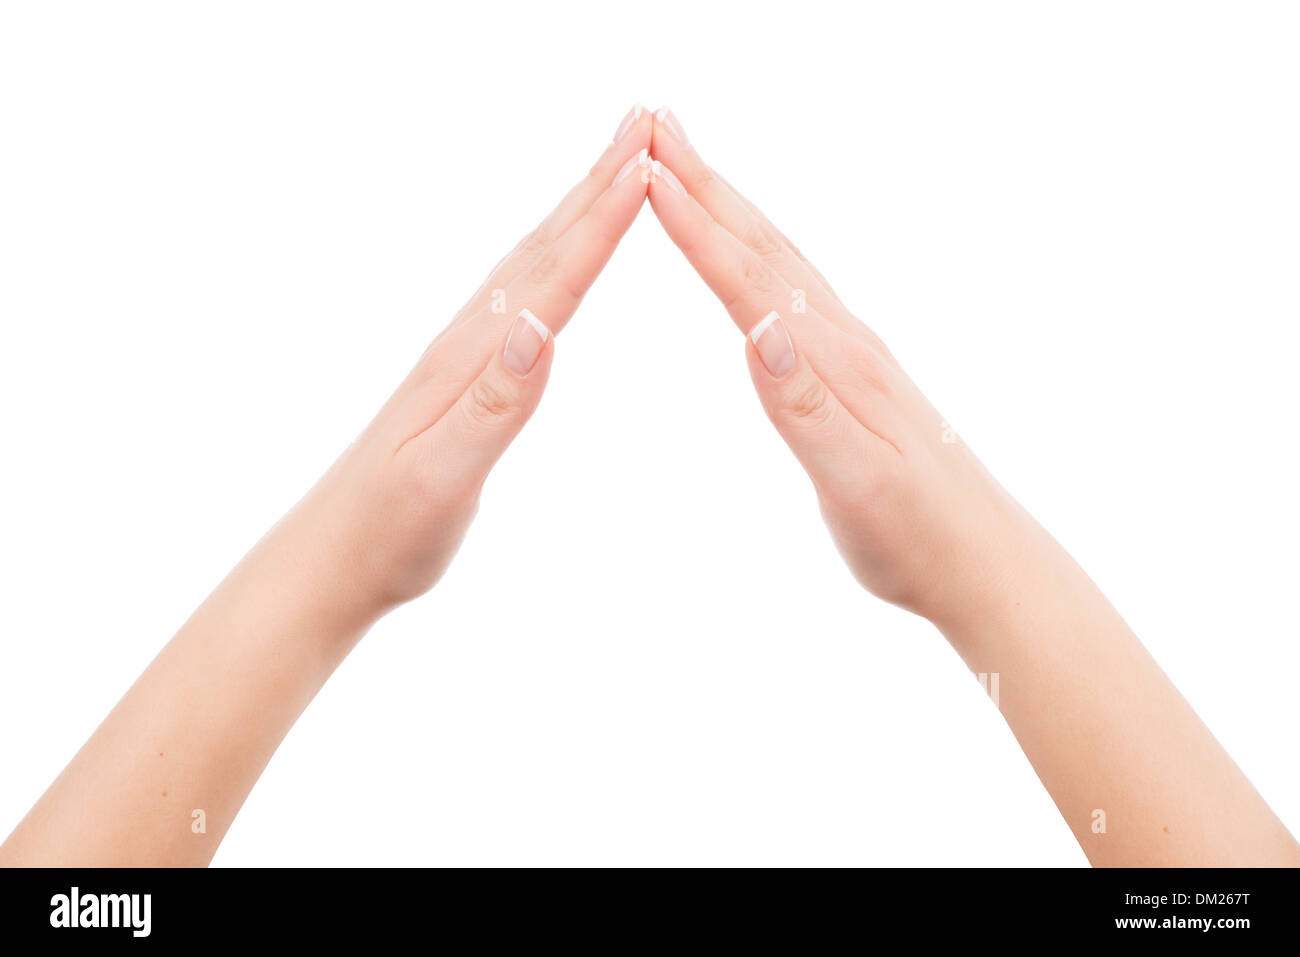 Femme mains montrant symbole accueil geste, isolé sur fond blanc. Vous pouvez mettre une image ou un symbole entre les mains. Banque D'Images